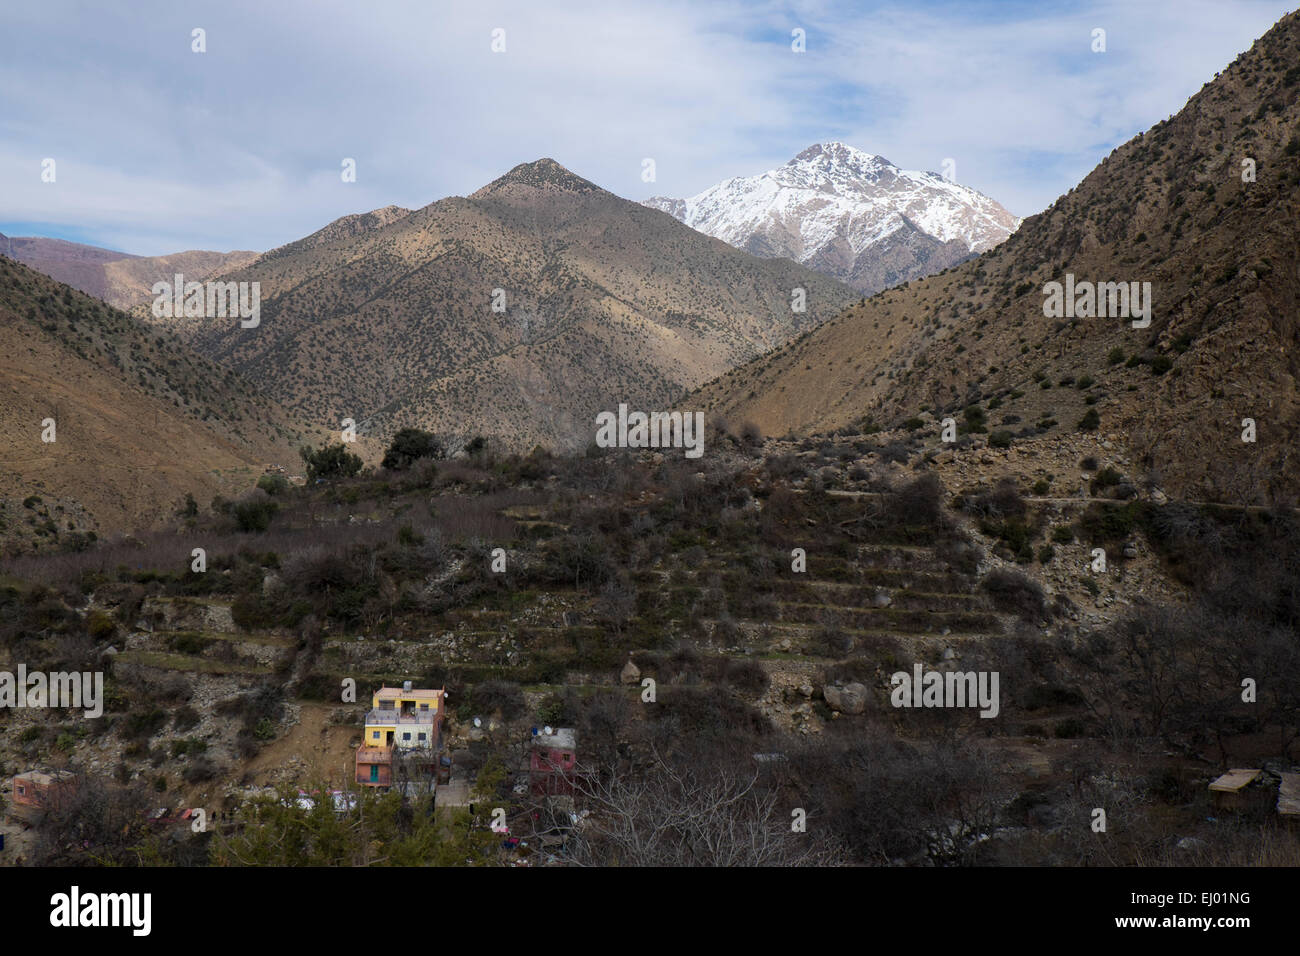 Les touristes prenant le déjeuner, village de Setti Fatma, vallée de l'Ourika, Atlas, Maroc, Afrique du Nord Banque D'Images